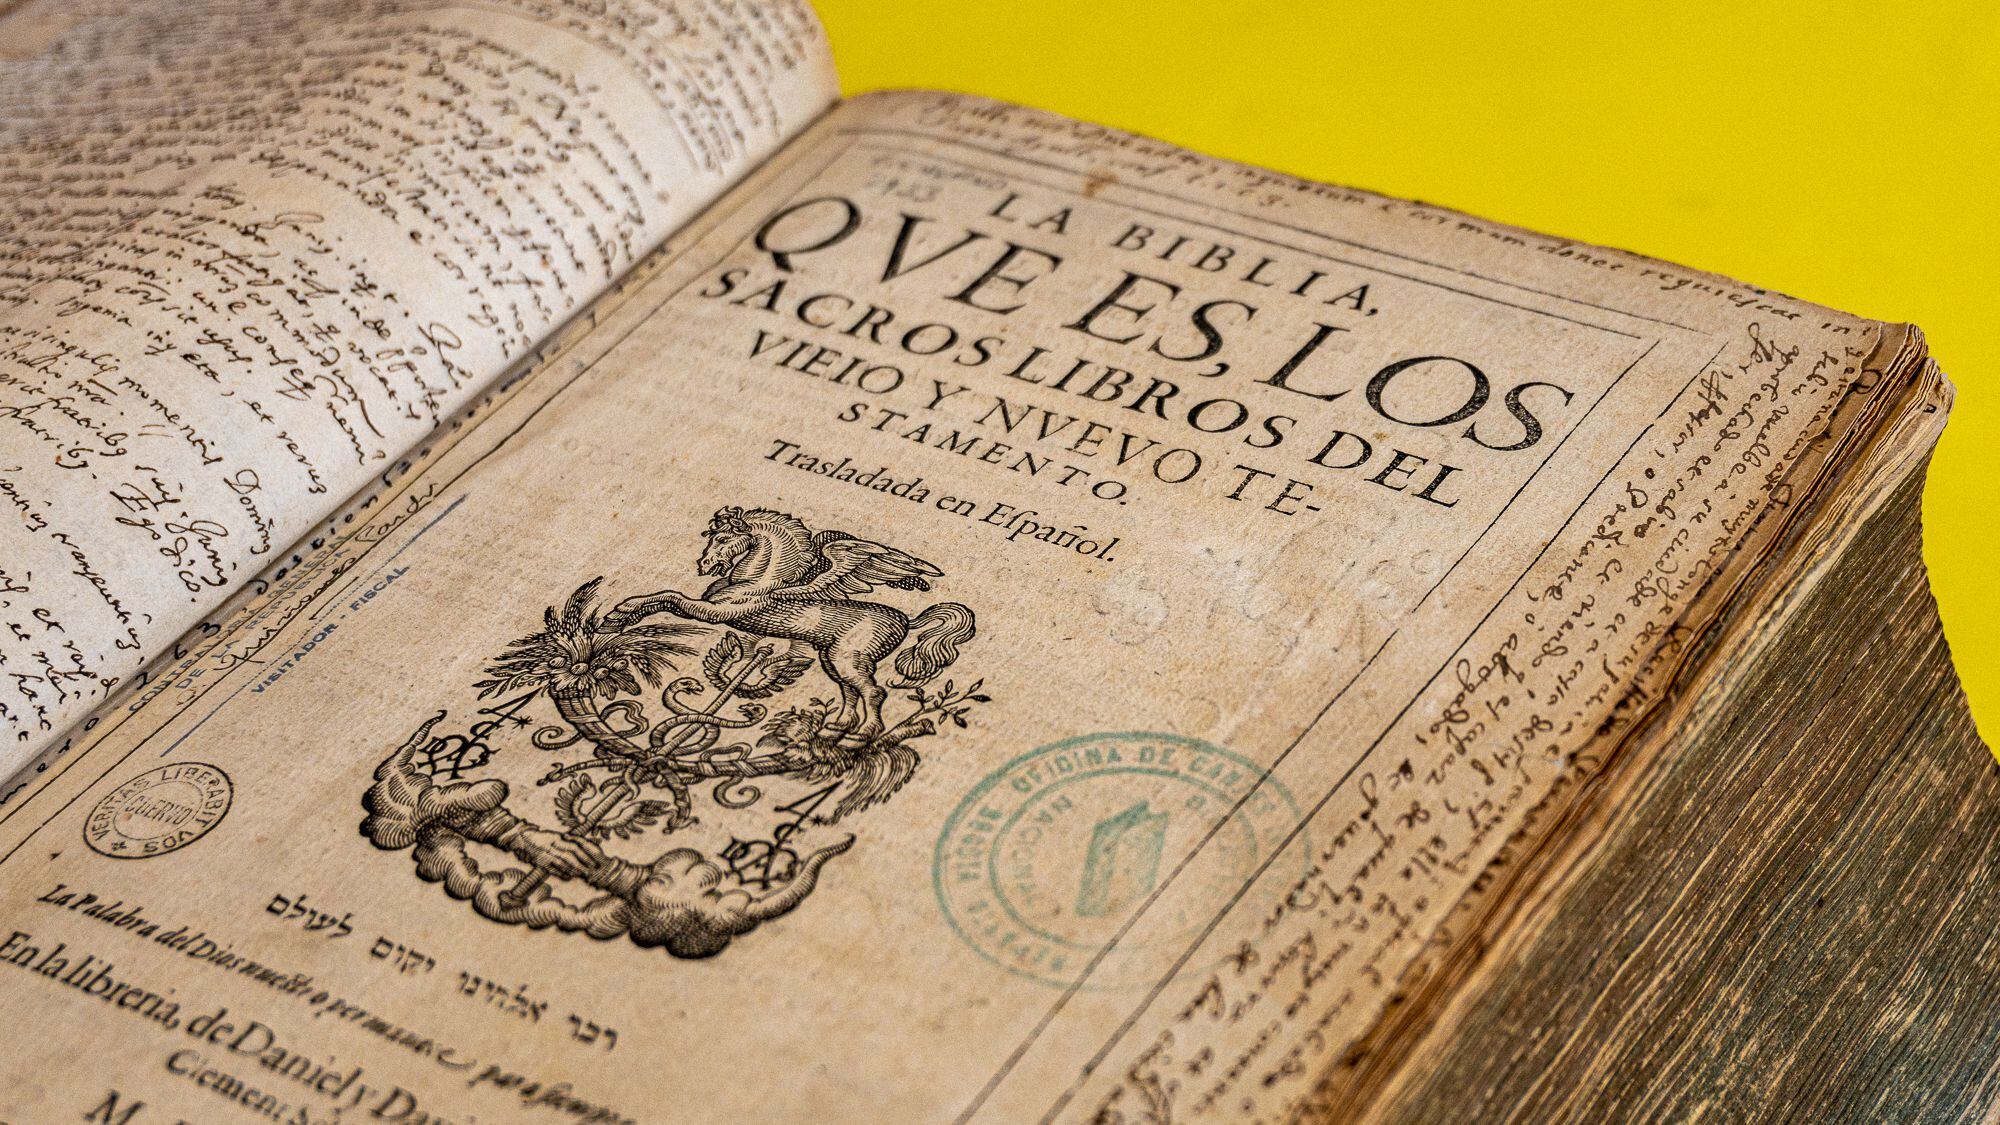 biblia que siempre estuvo en el índice de libros prohibidos por la inquisición es conservada actualmente por la biblioteca nacional